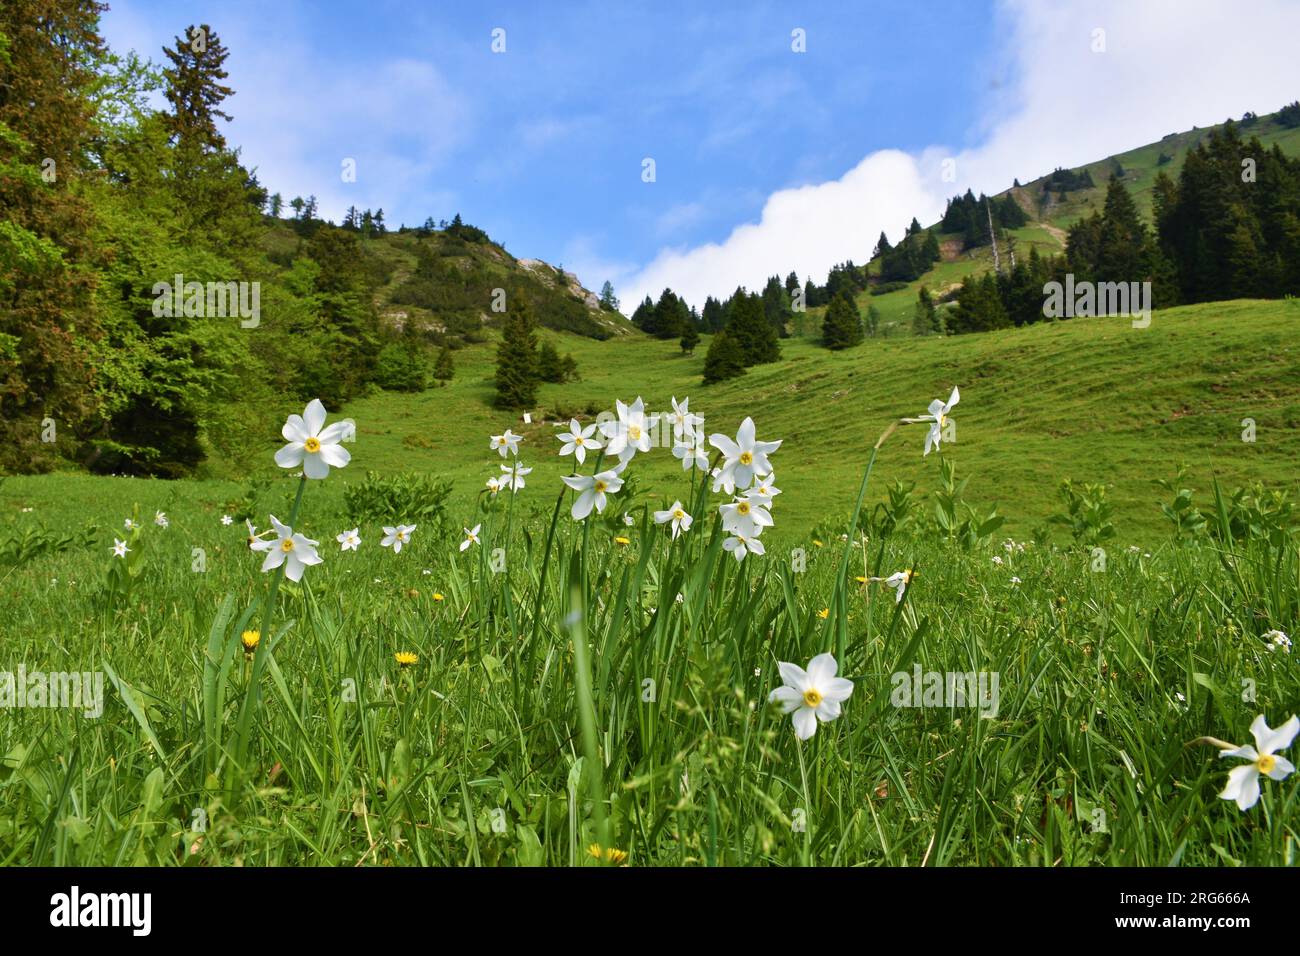 Il narciso del poeta bianco (Narcissus poeticus) fiorisce su un pendio a Hruski vrh nelle montagne del Karavanke, Gorenjska, Slovenia Foto Stock